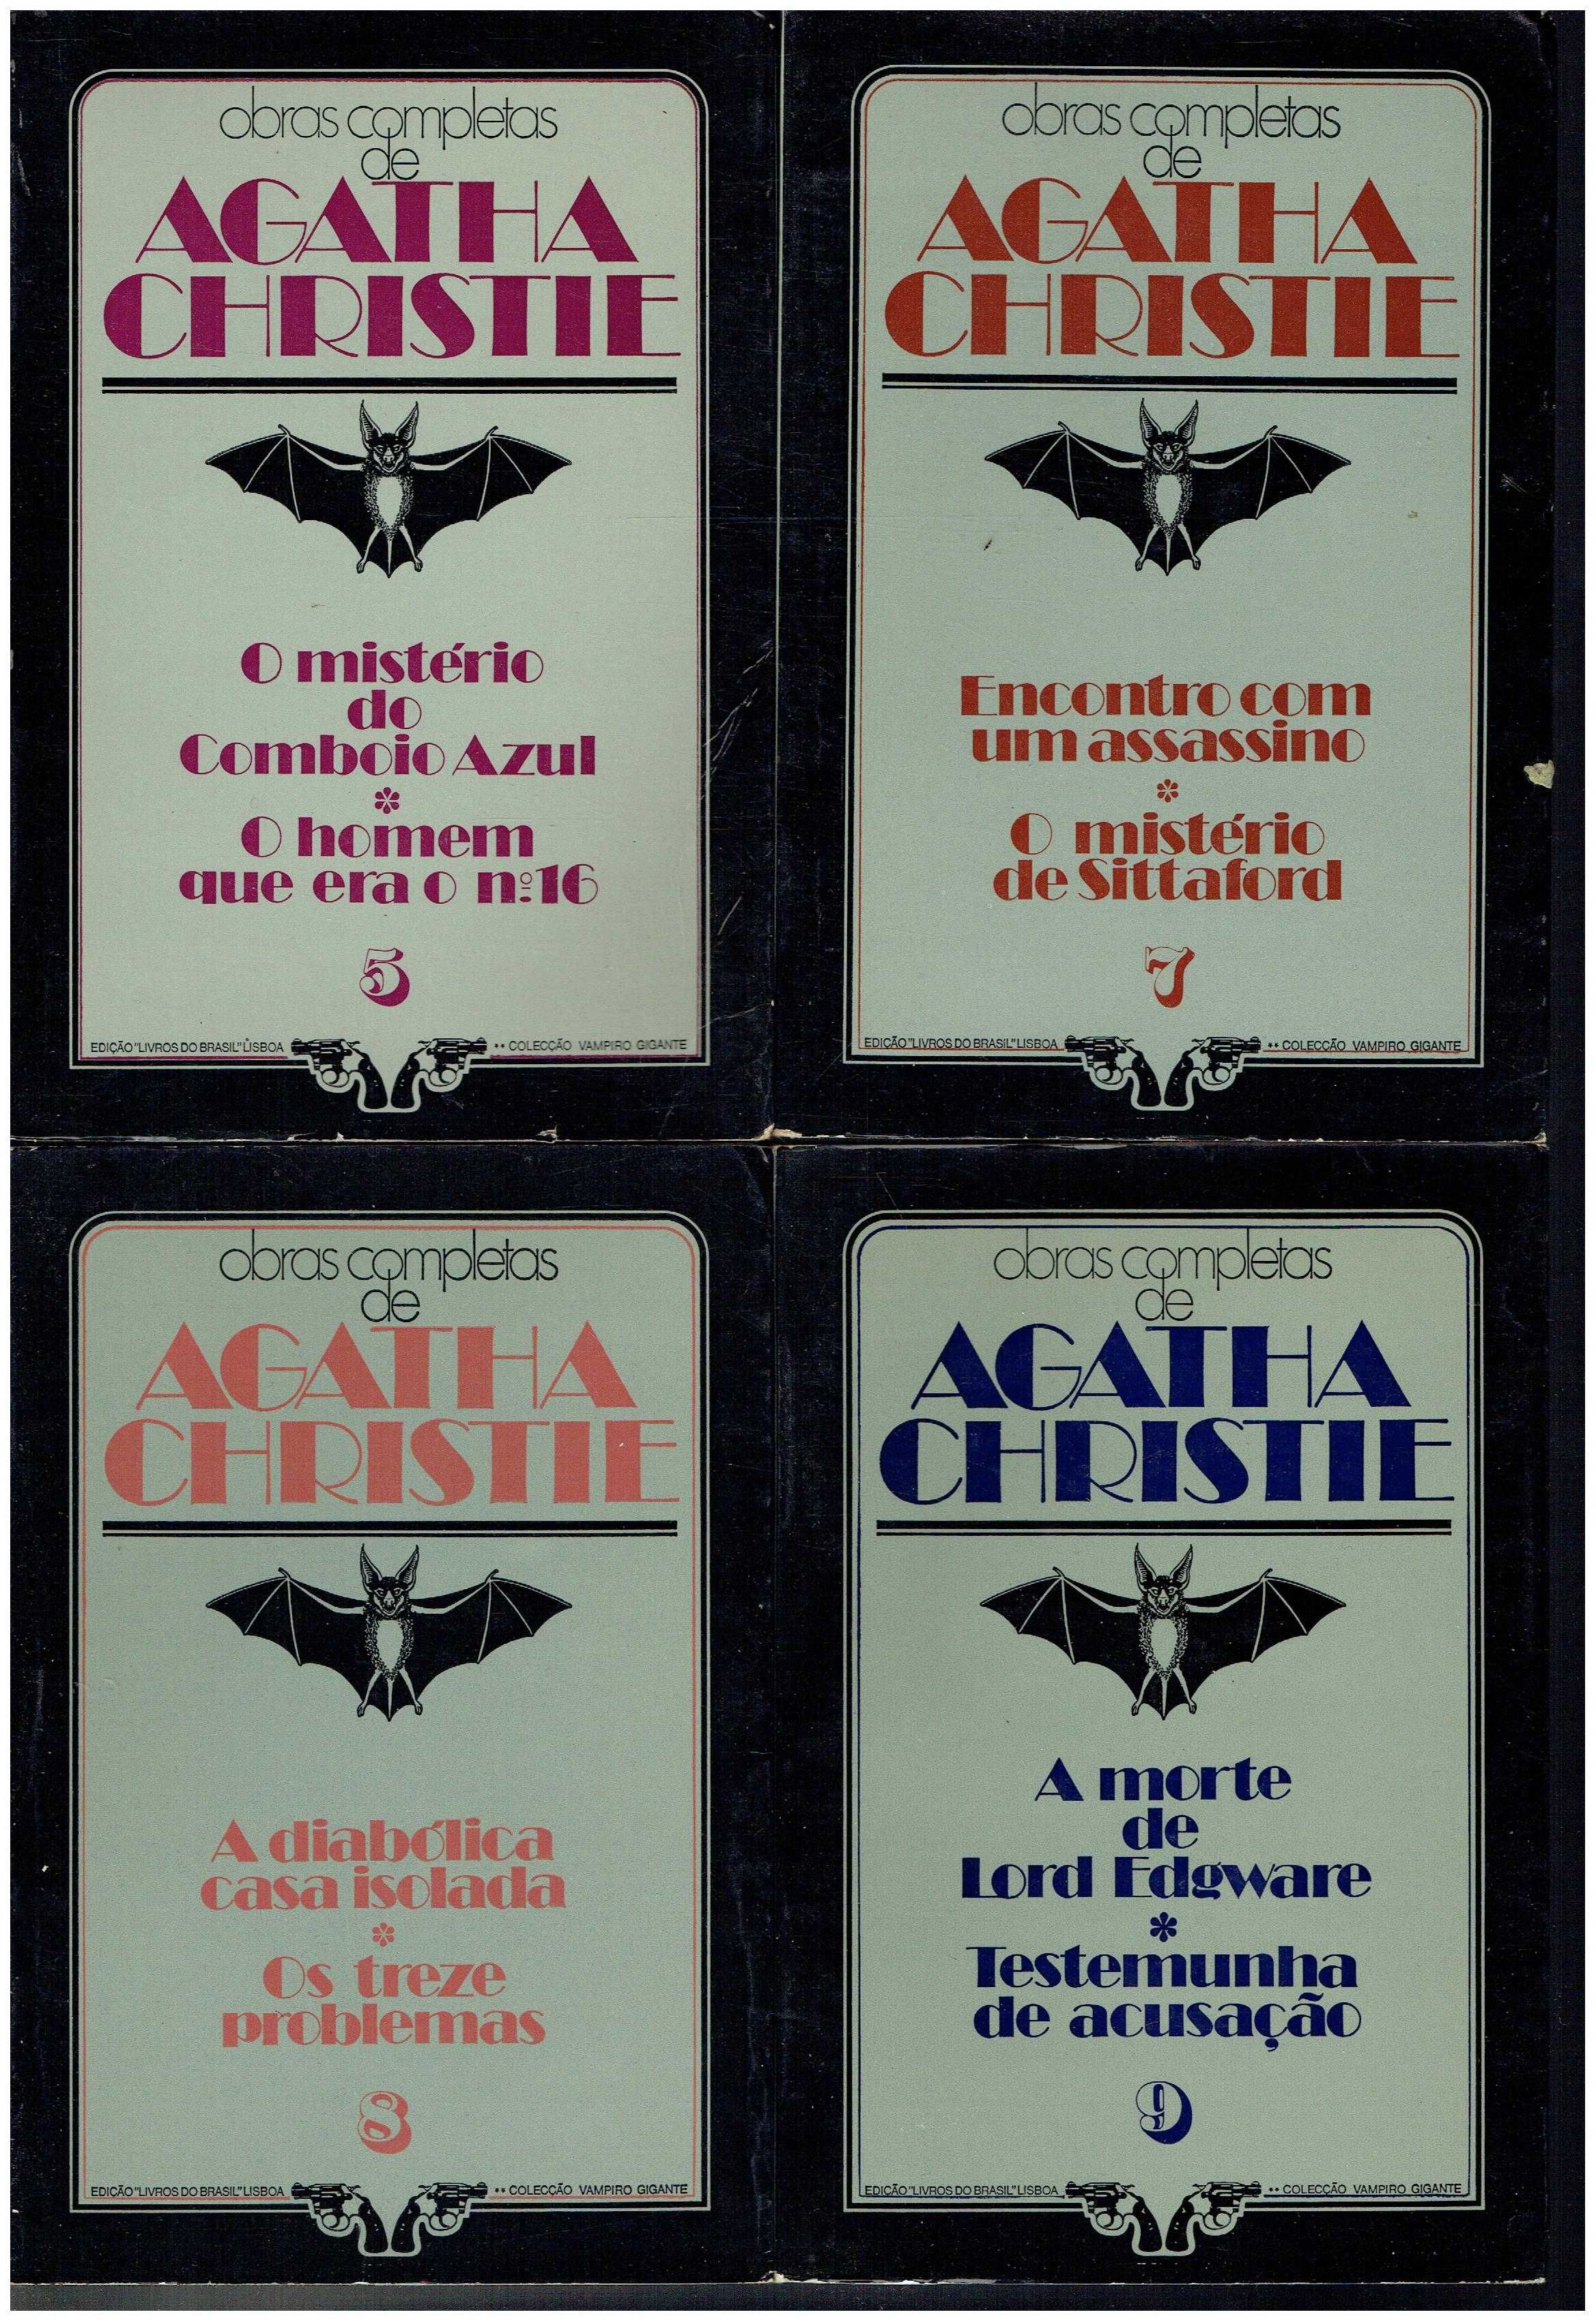 12176

Coleção Obras de Agatha Christie 

Livros do Brasil